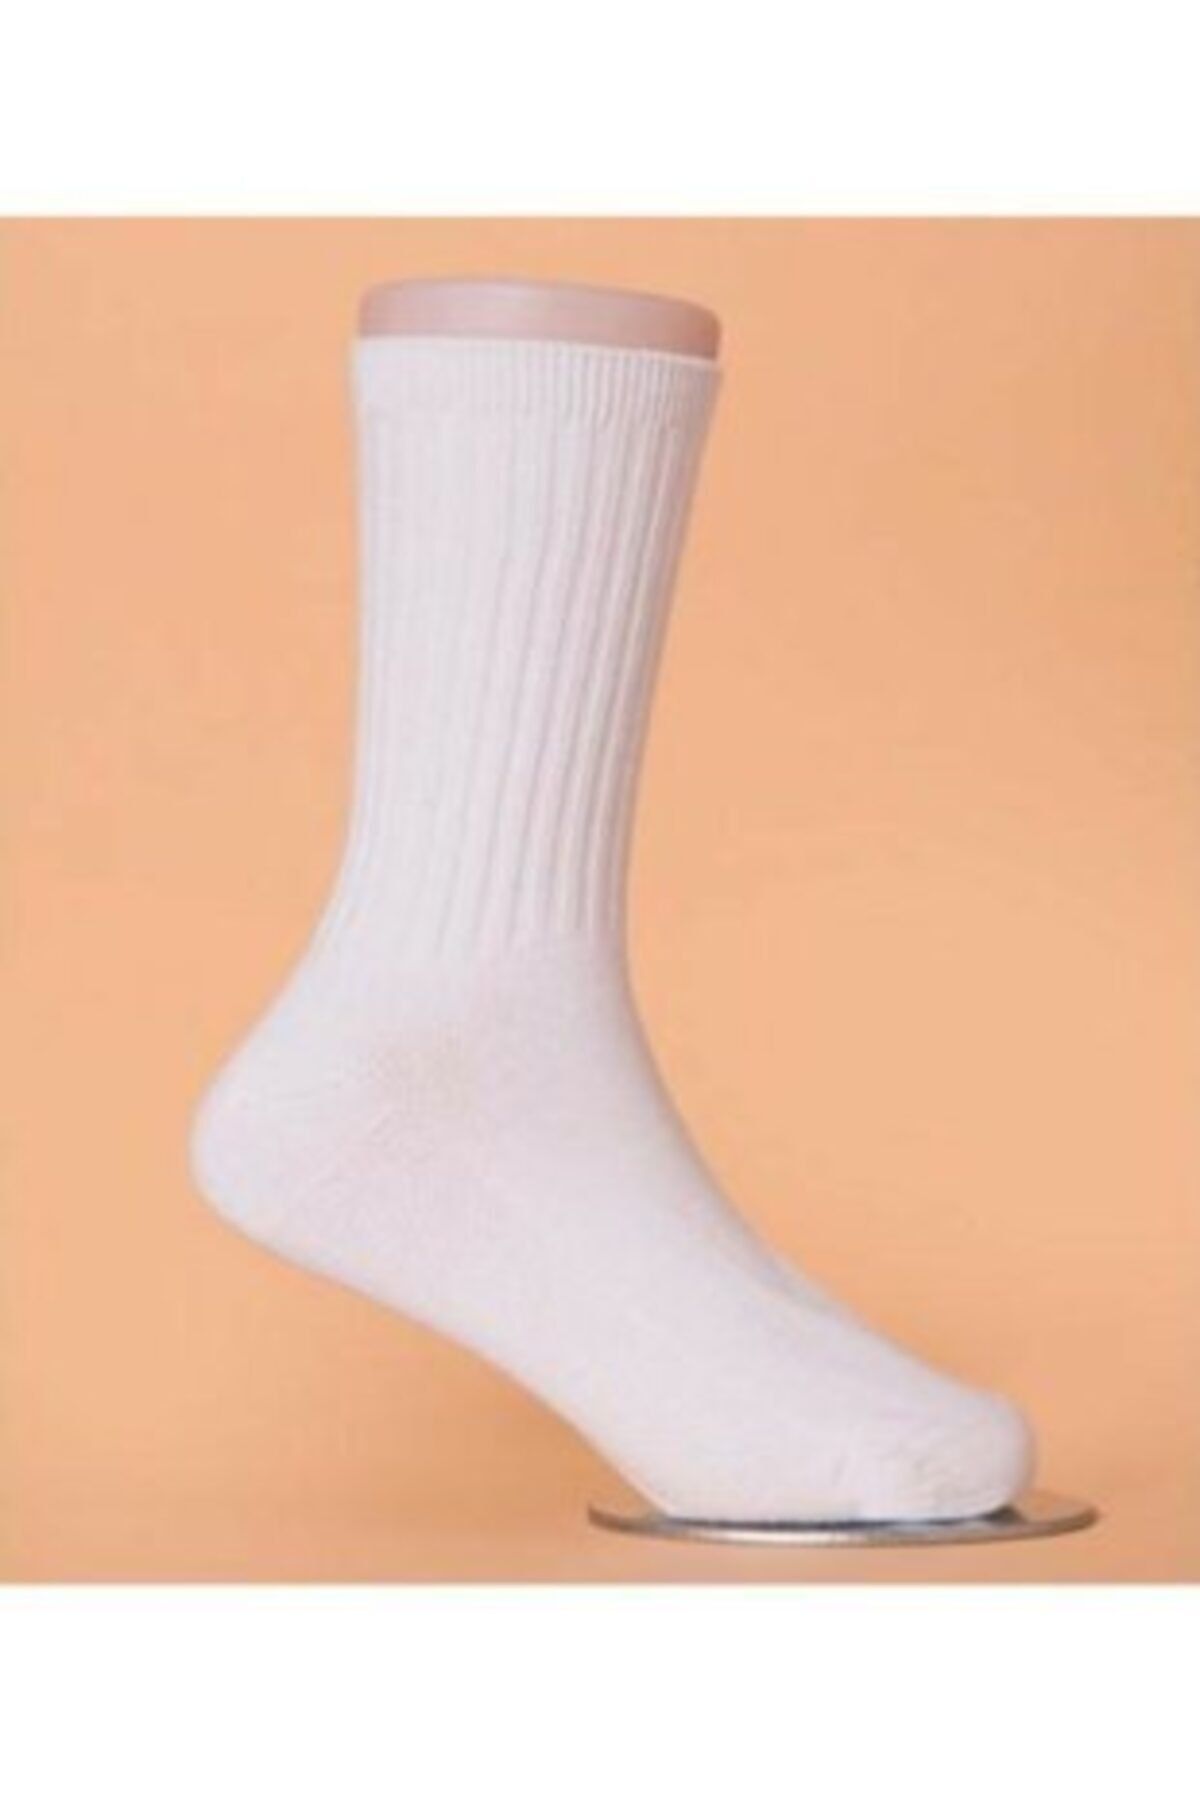 CKV CENTER 4 Çift Beyaz Spor Çorap Halısaha Günlük Giyim Antrenman Çorabı